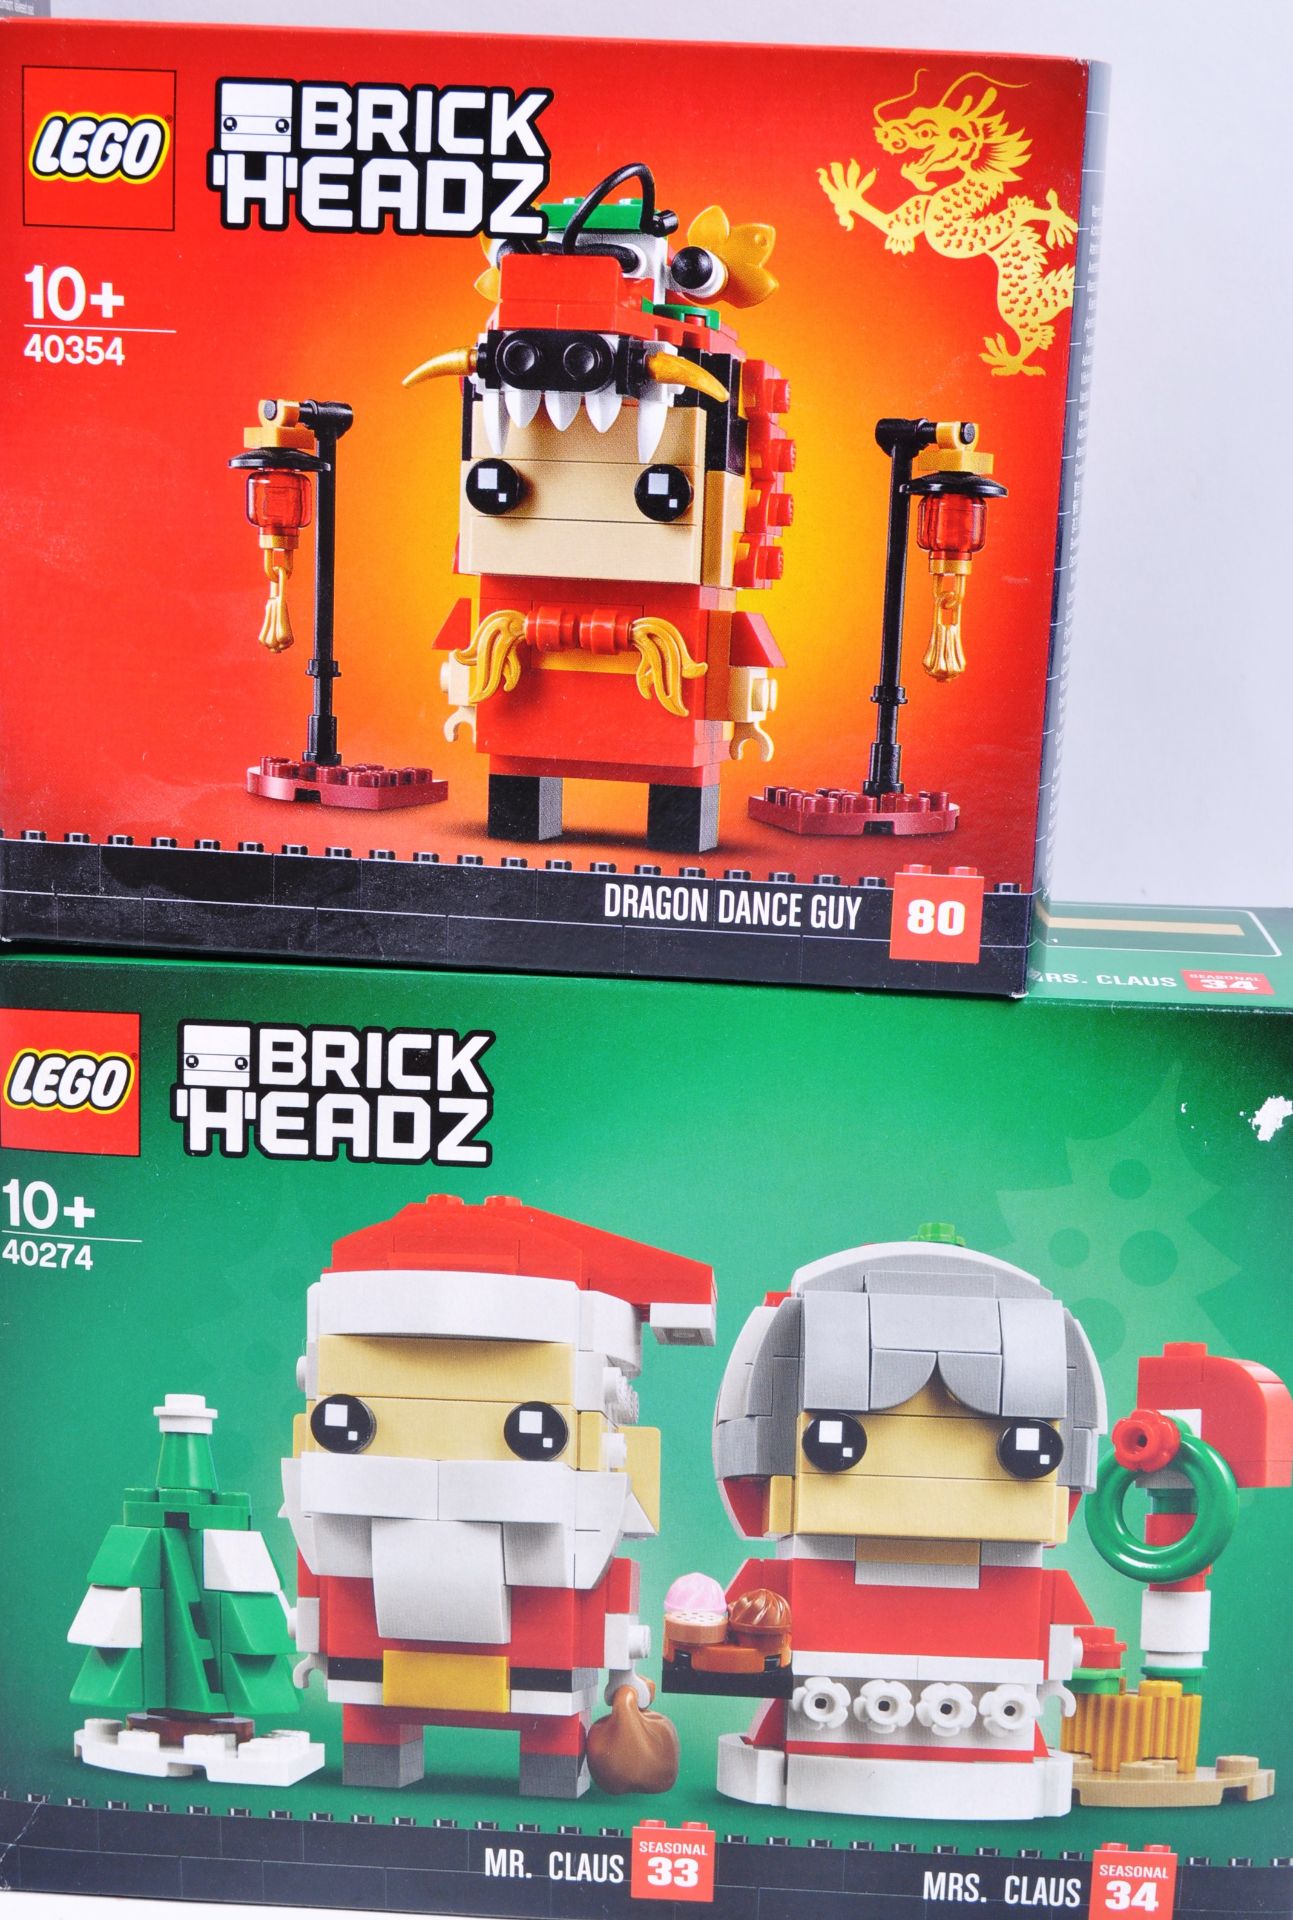 LEGO SETS - BRICK HEADZ - Image 3 of 6